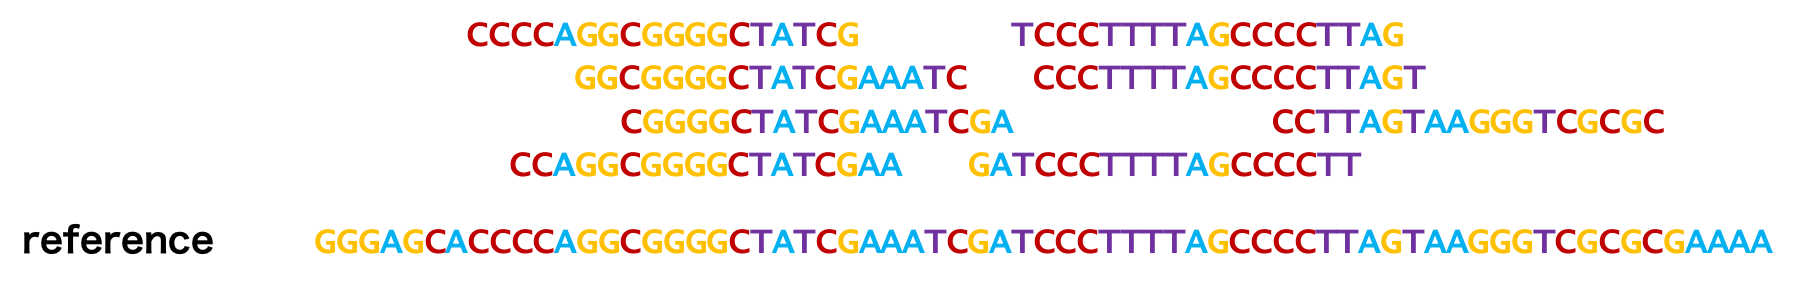 RNASeq マッピングはリードとゲノム配列を比較して、リードの由来箇所を決めることである。